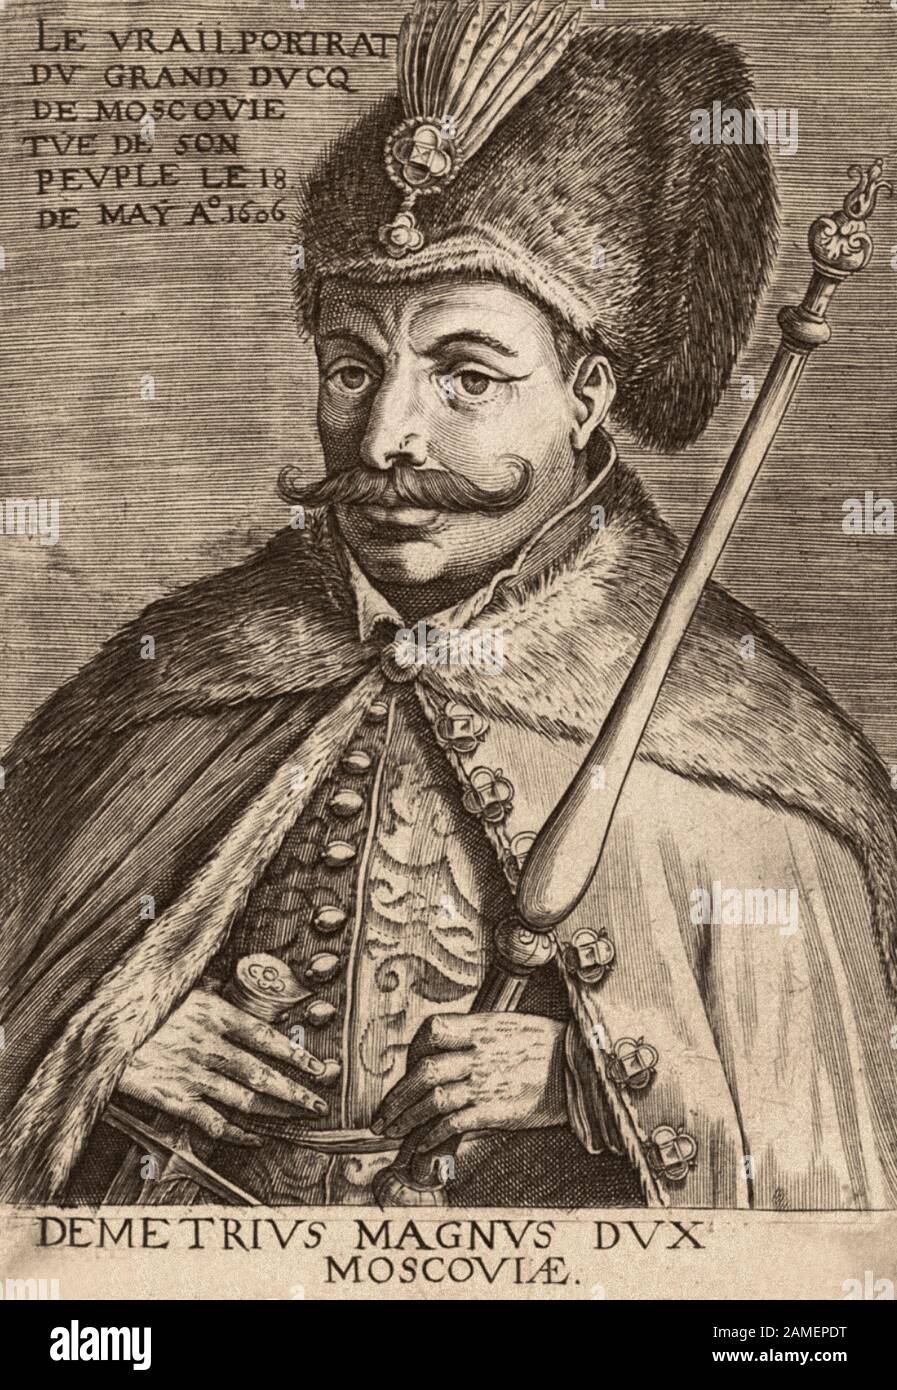 Falso Dmitry (?-1606 - Zar russo con il 1 giugno 1605 anno 17 (27) il maggio 1606 anno, su tradizione storiografica diffusa-i primi tre da Foto Stock